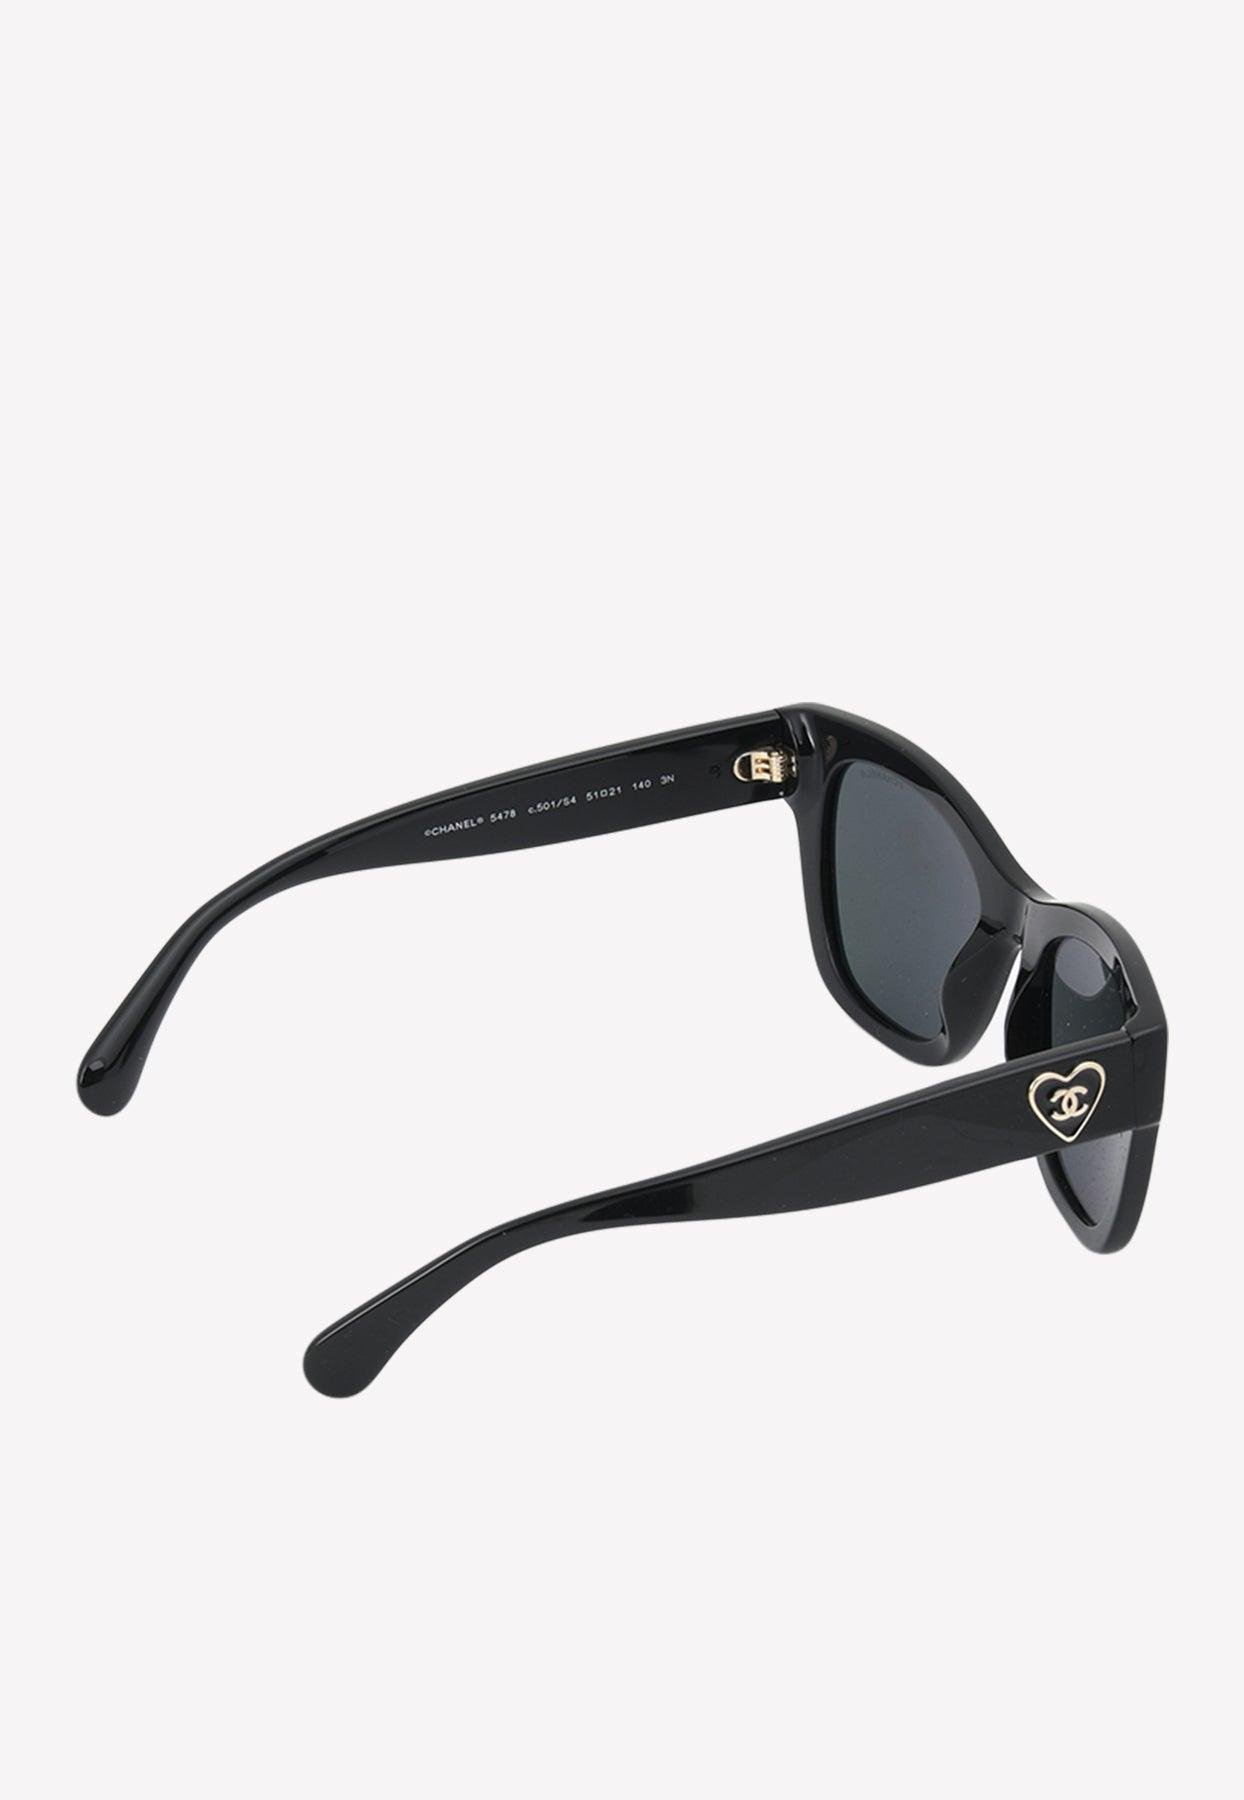 CHANEL, Accessories, Chanel 5478 Black Gold Square Sunglasses